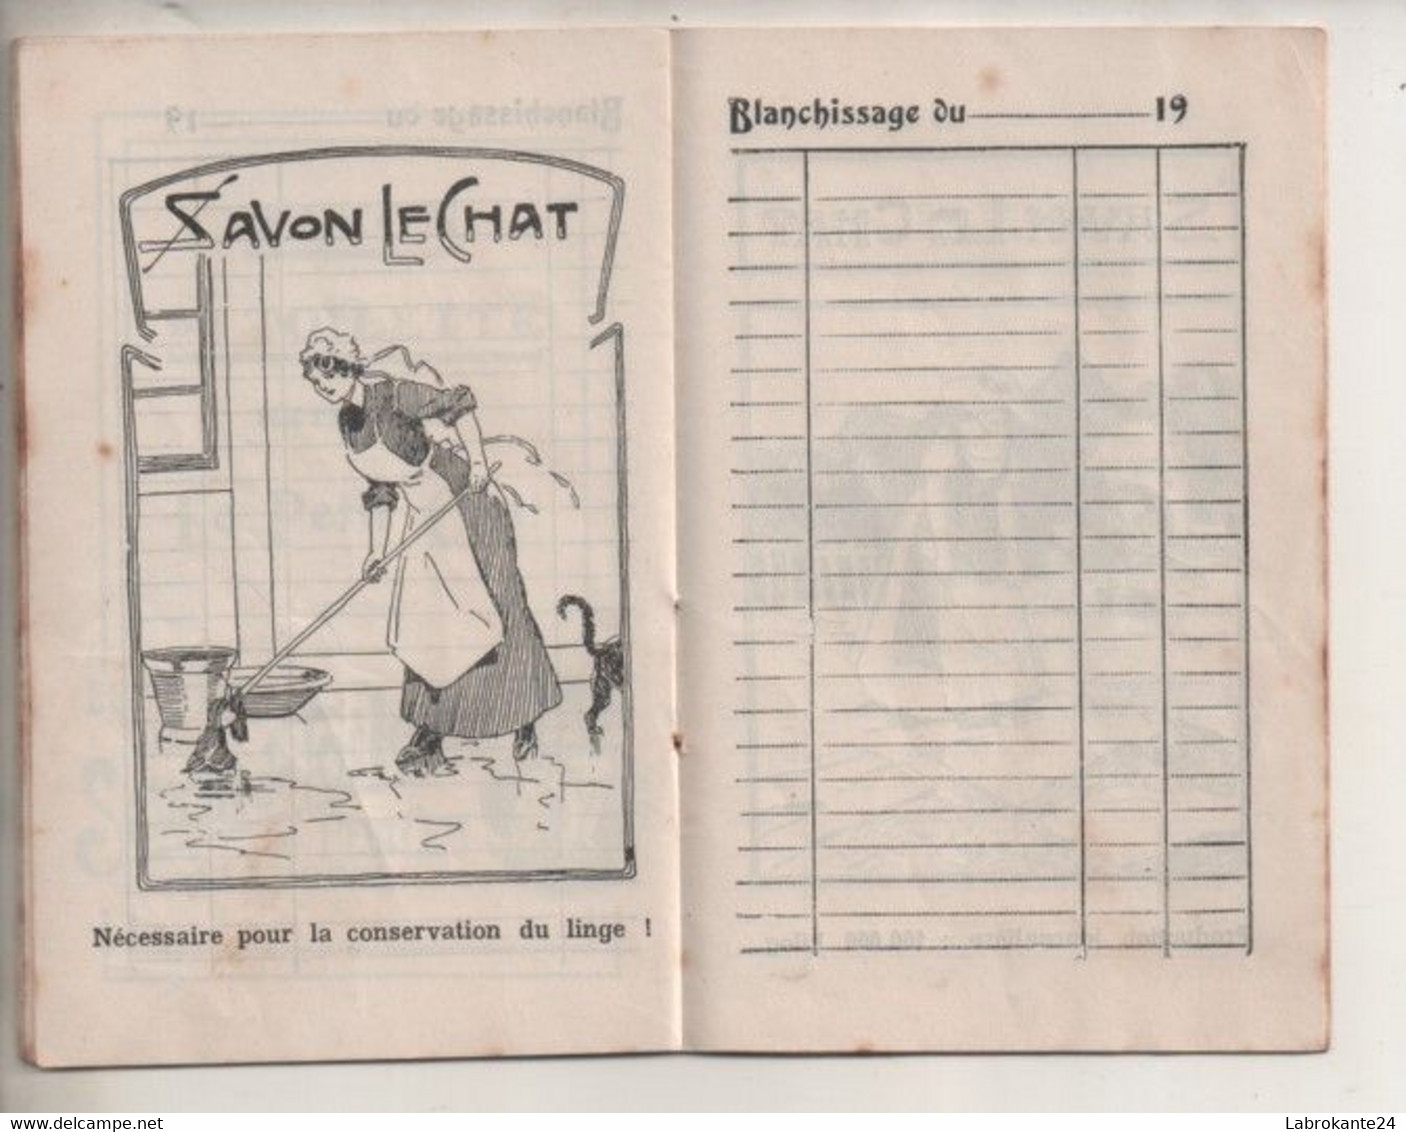 Ref Perso AlbGR : Livret 8 X 12.5 Cm Calendrier 1912 1913 La Grande Savonnerie Ferrier Marseille 24 Pages Savon Le Chat - Kleinformat : 1901-20